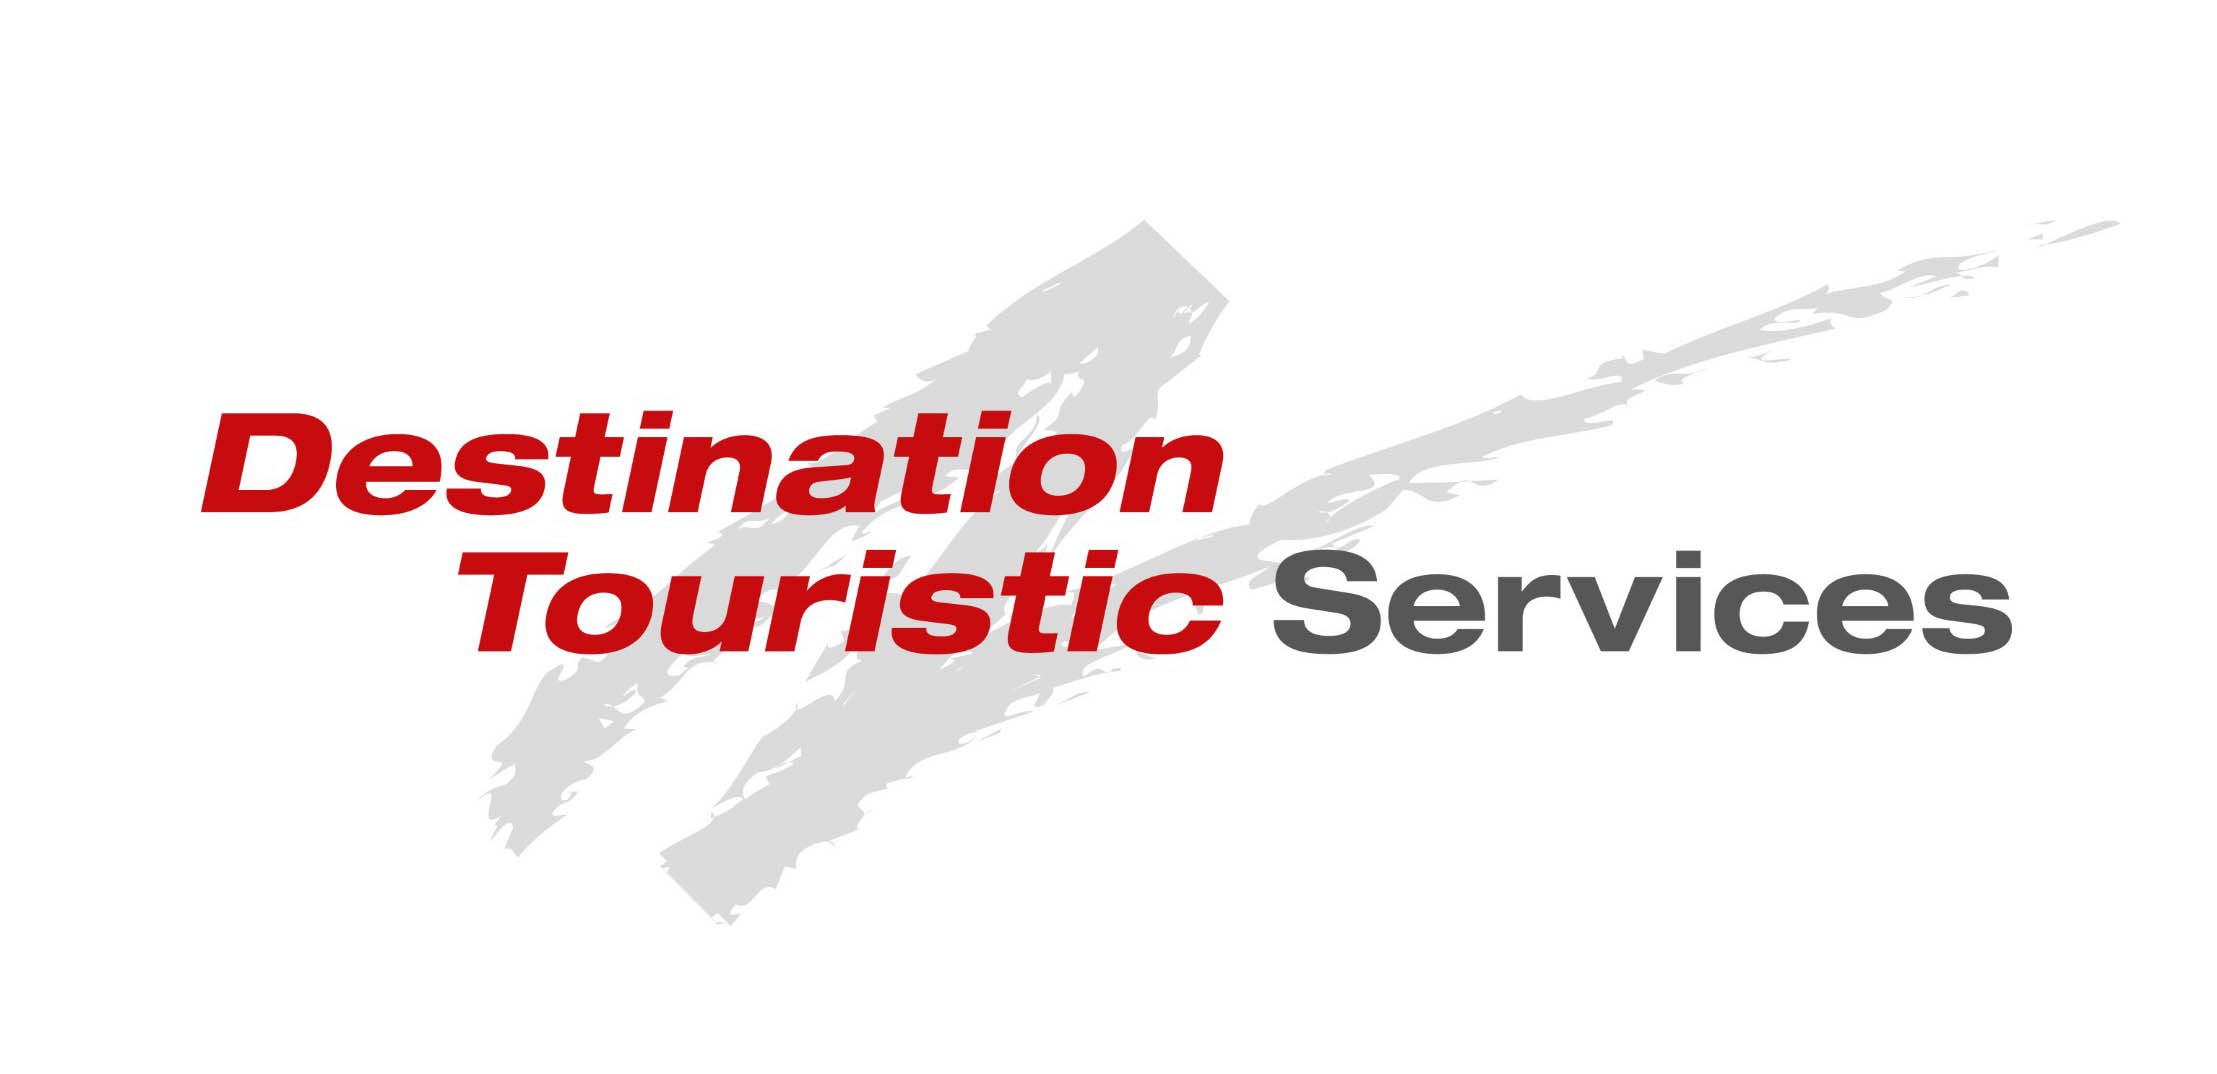 Η DESTINATION TOURISTIC SERVICES επιθυμεί να προσλάβει προσωπικό για το υποκατάστημα στην Κω